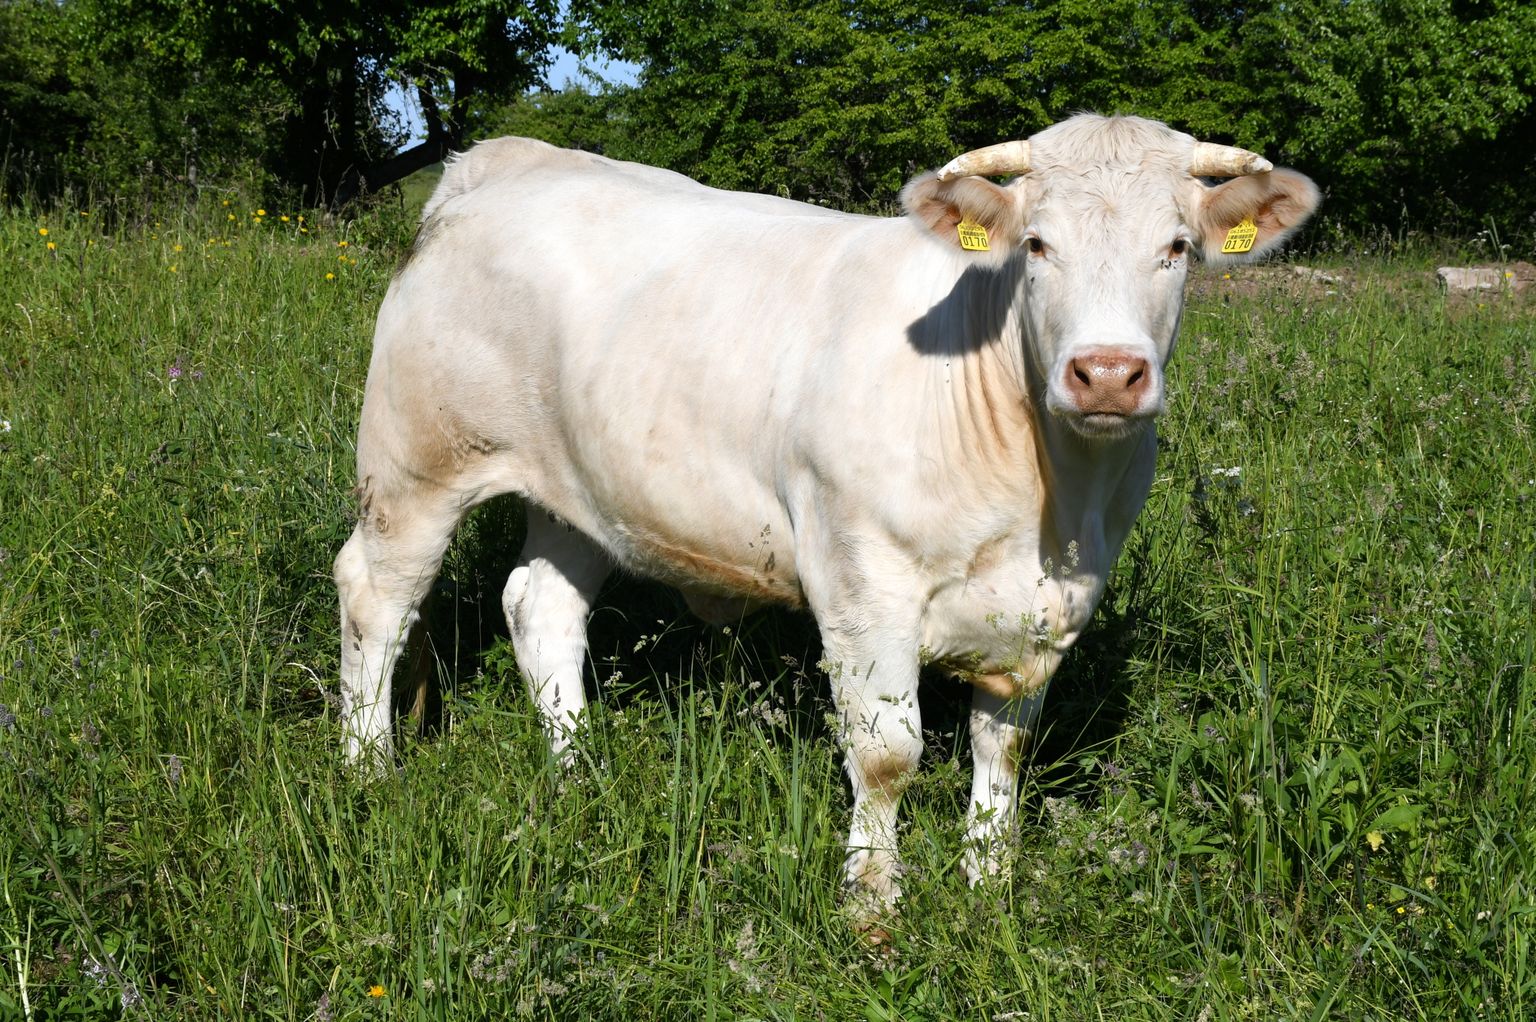 Šarolē jeb gaļas šķirnes govis Ludzas novada Zvirgzdenes pagastā.